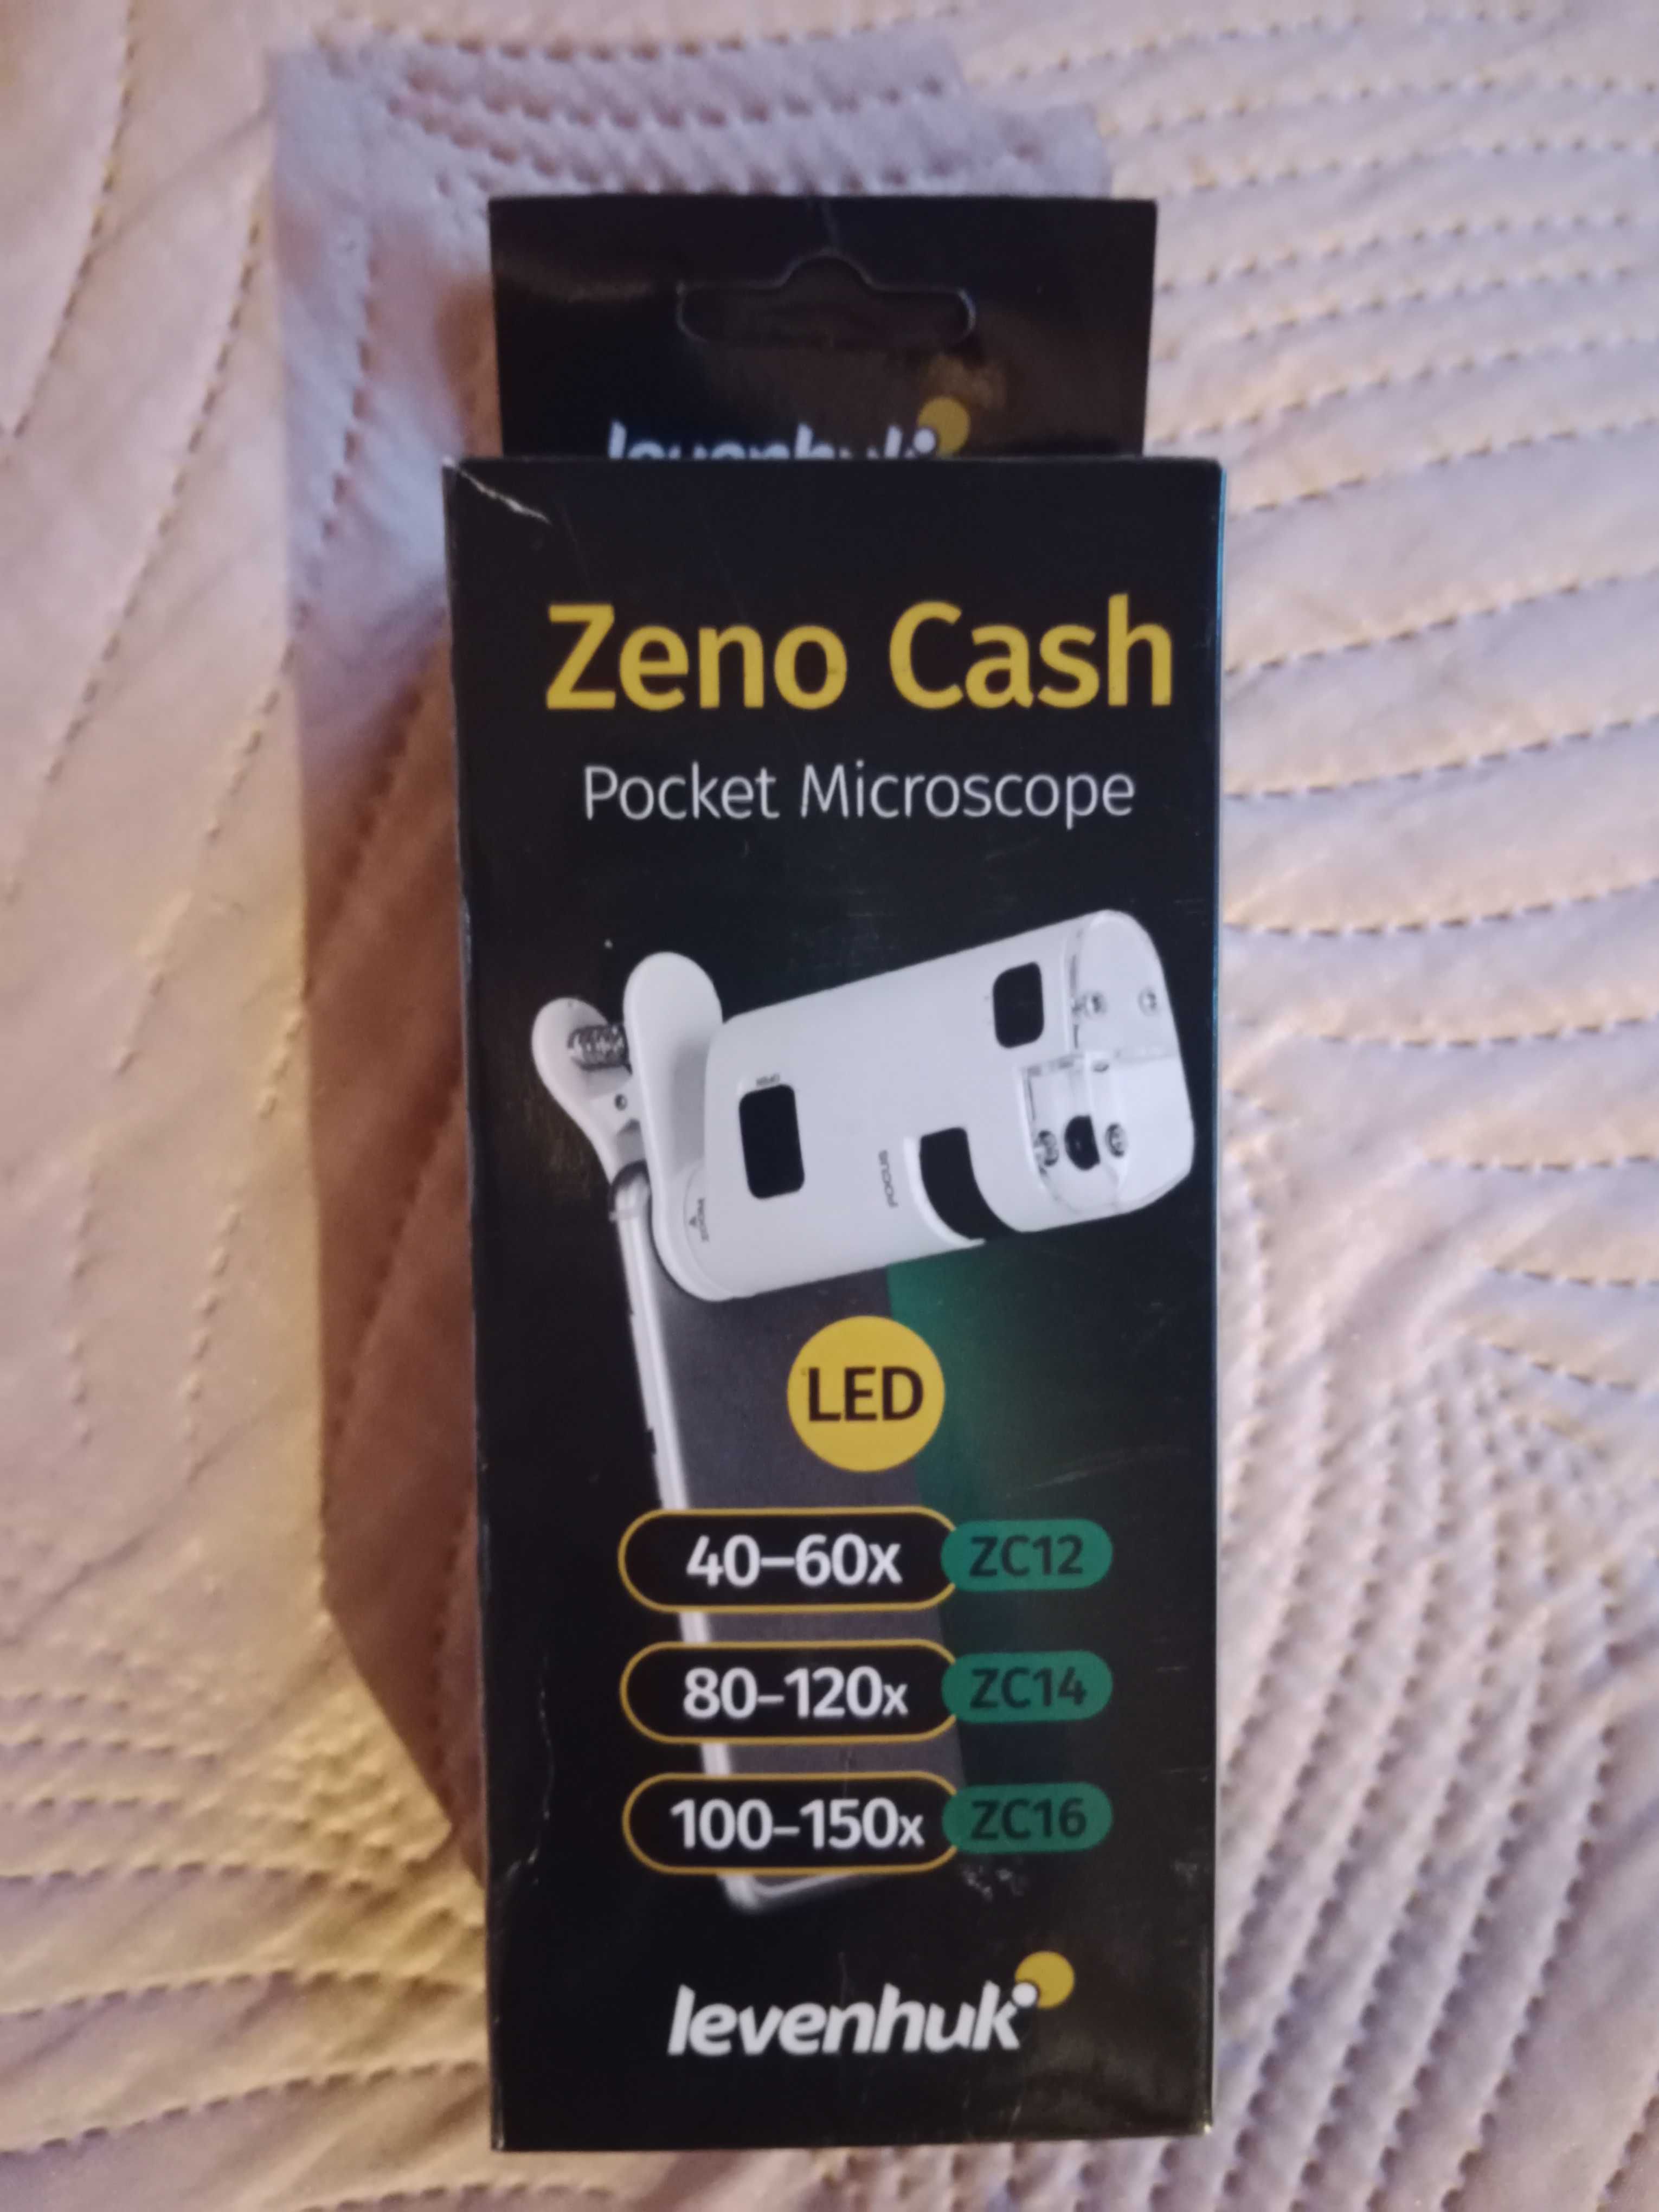 Mikroskop kieszonkowy Levenhuk Zeno Cash ZC16 - biały